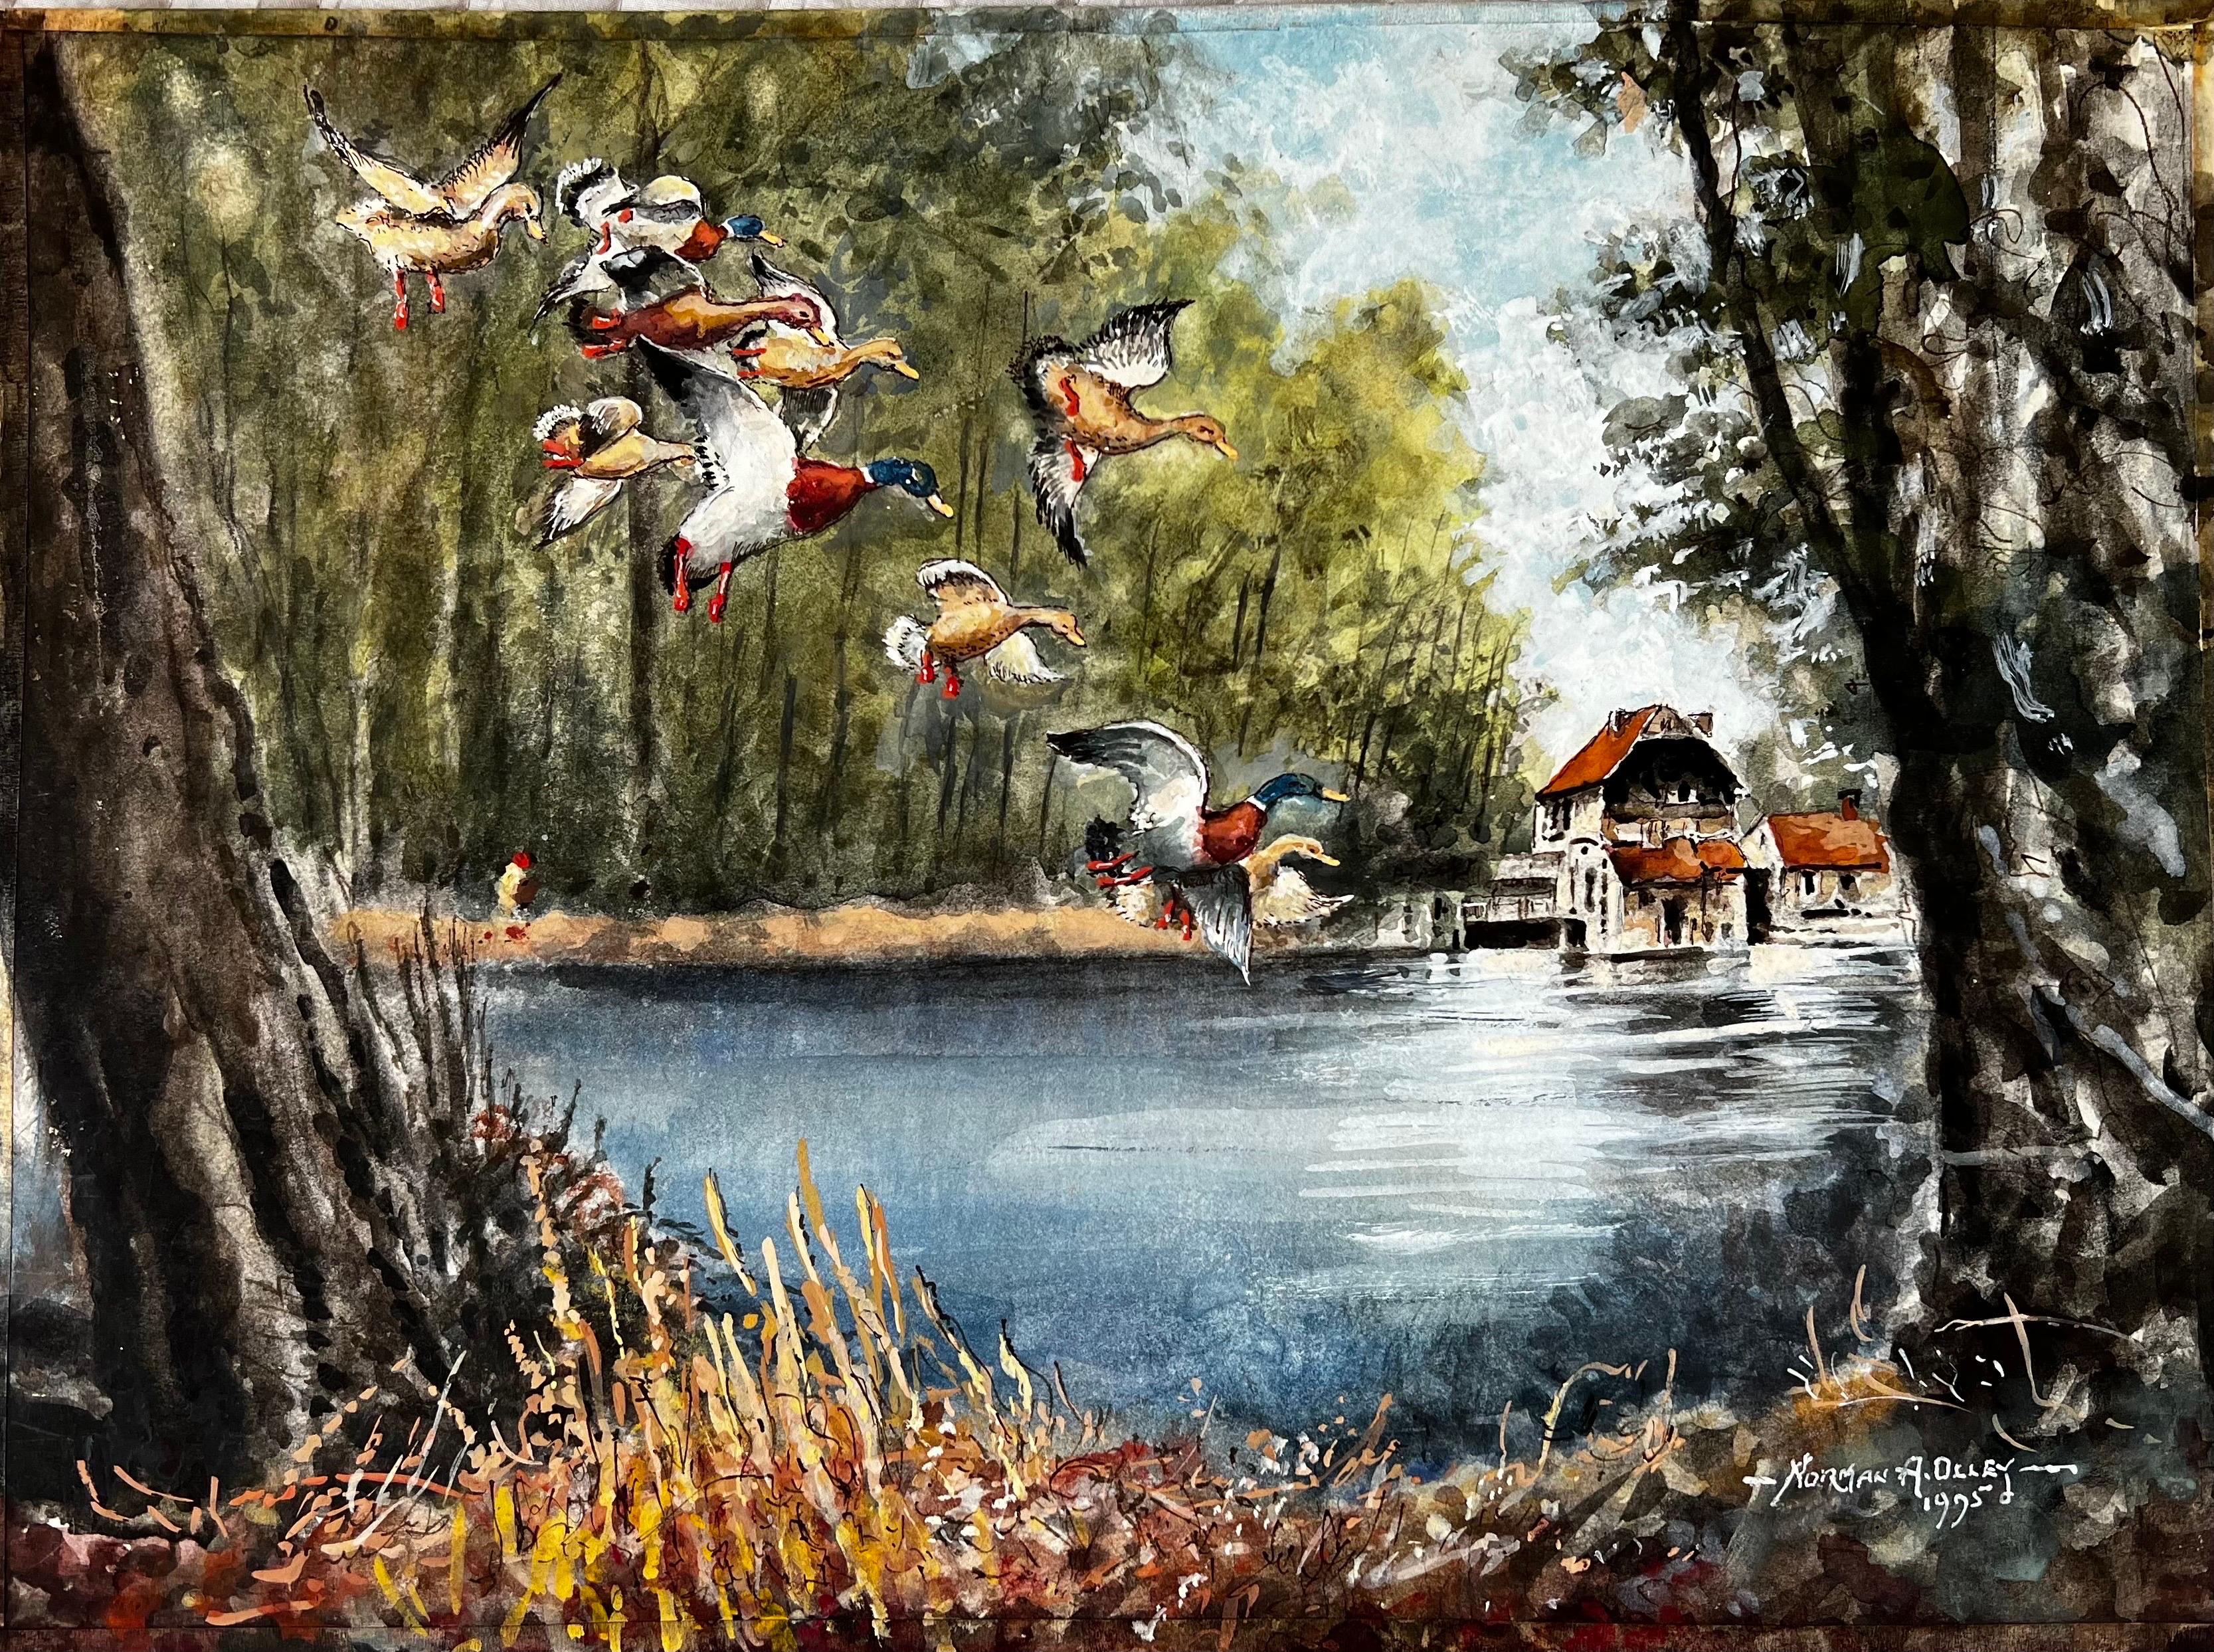 Des canards évasés volant vers le moulin